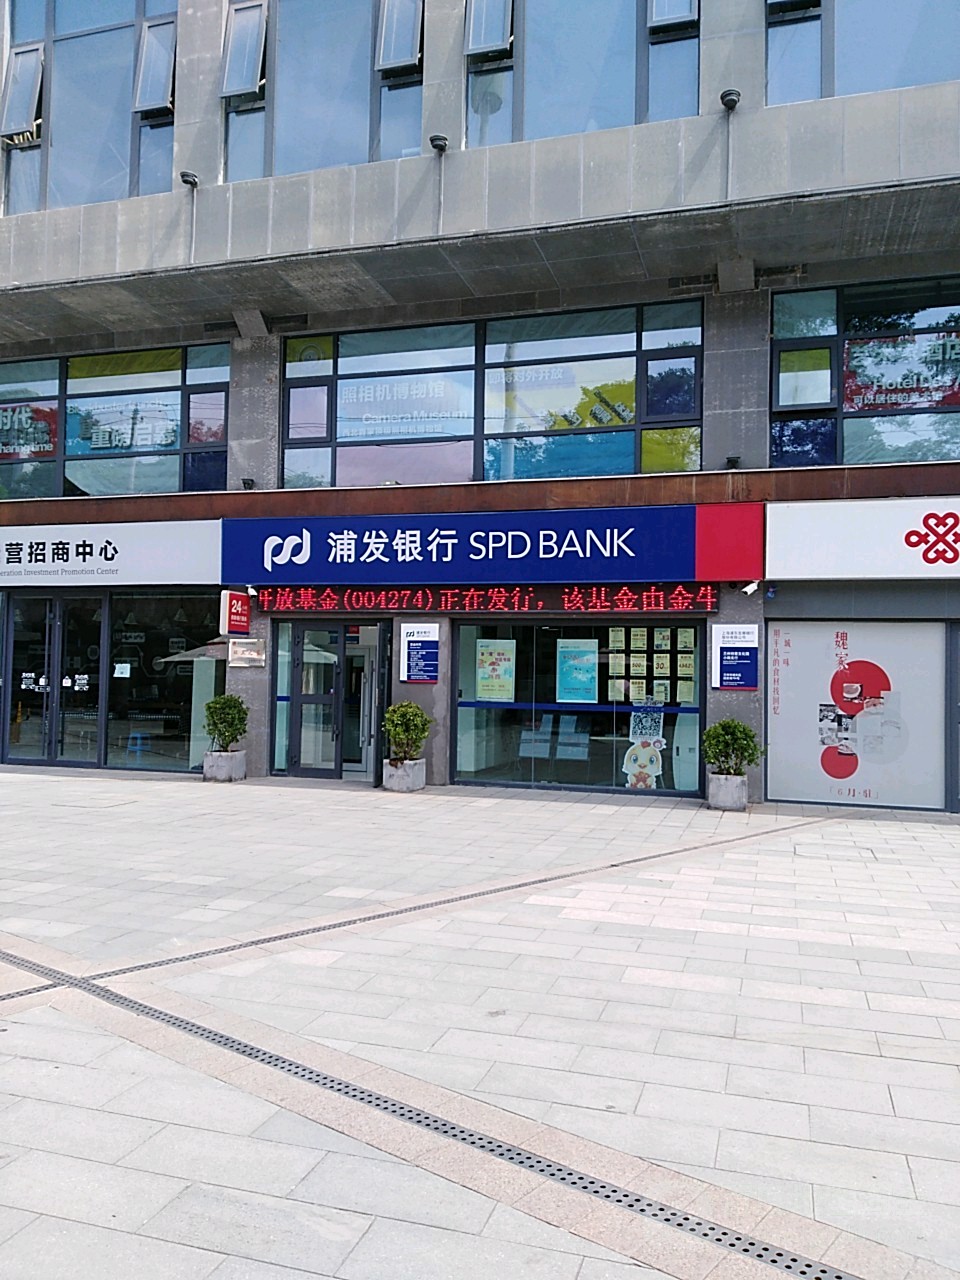 上海浦東發展銀行(段家灘路店)